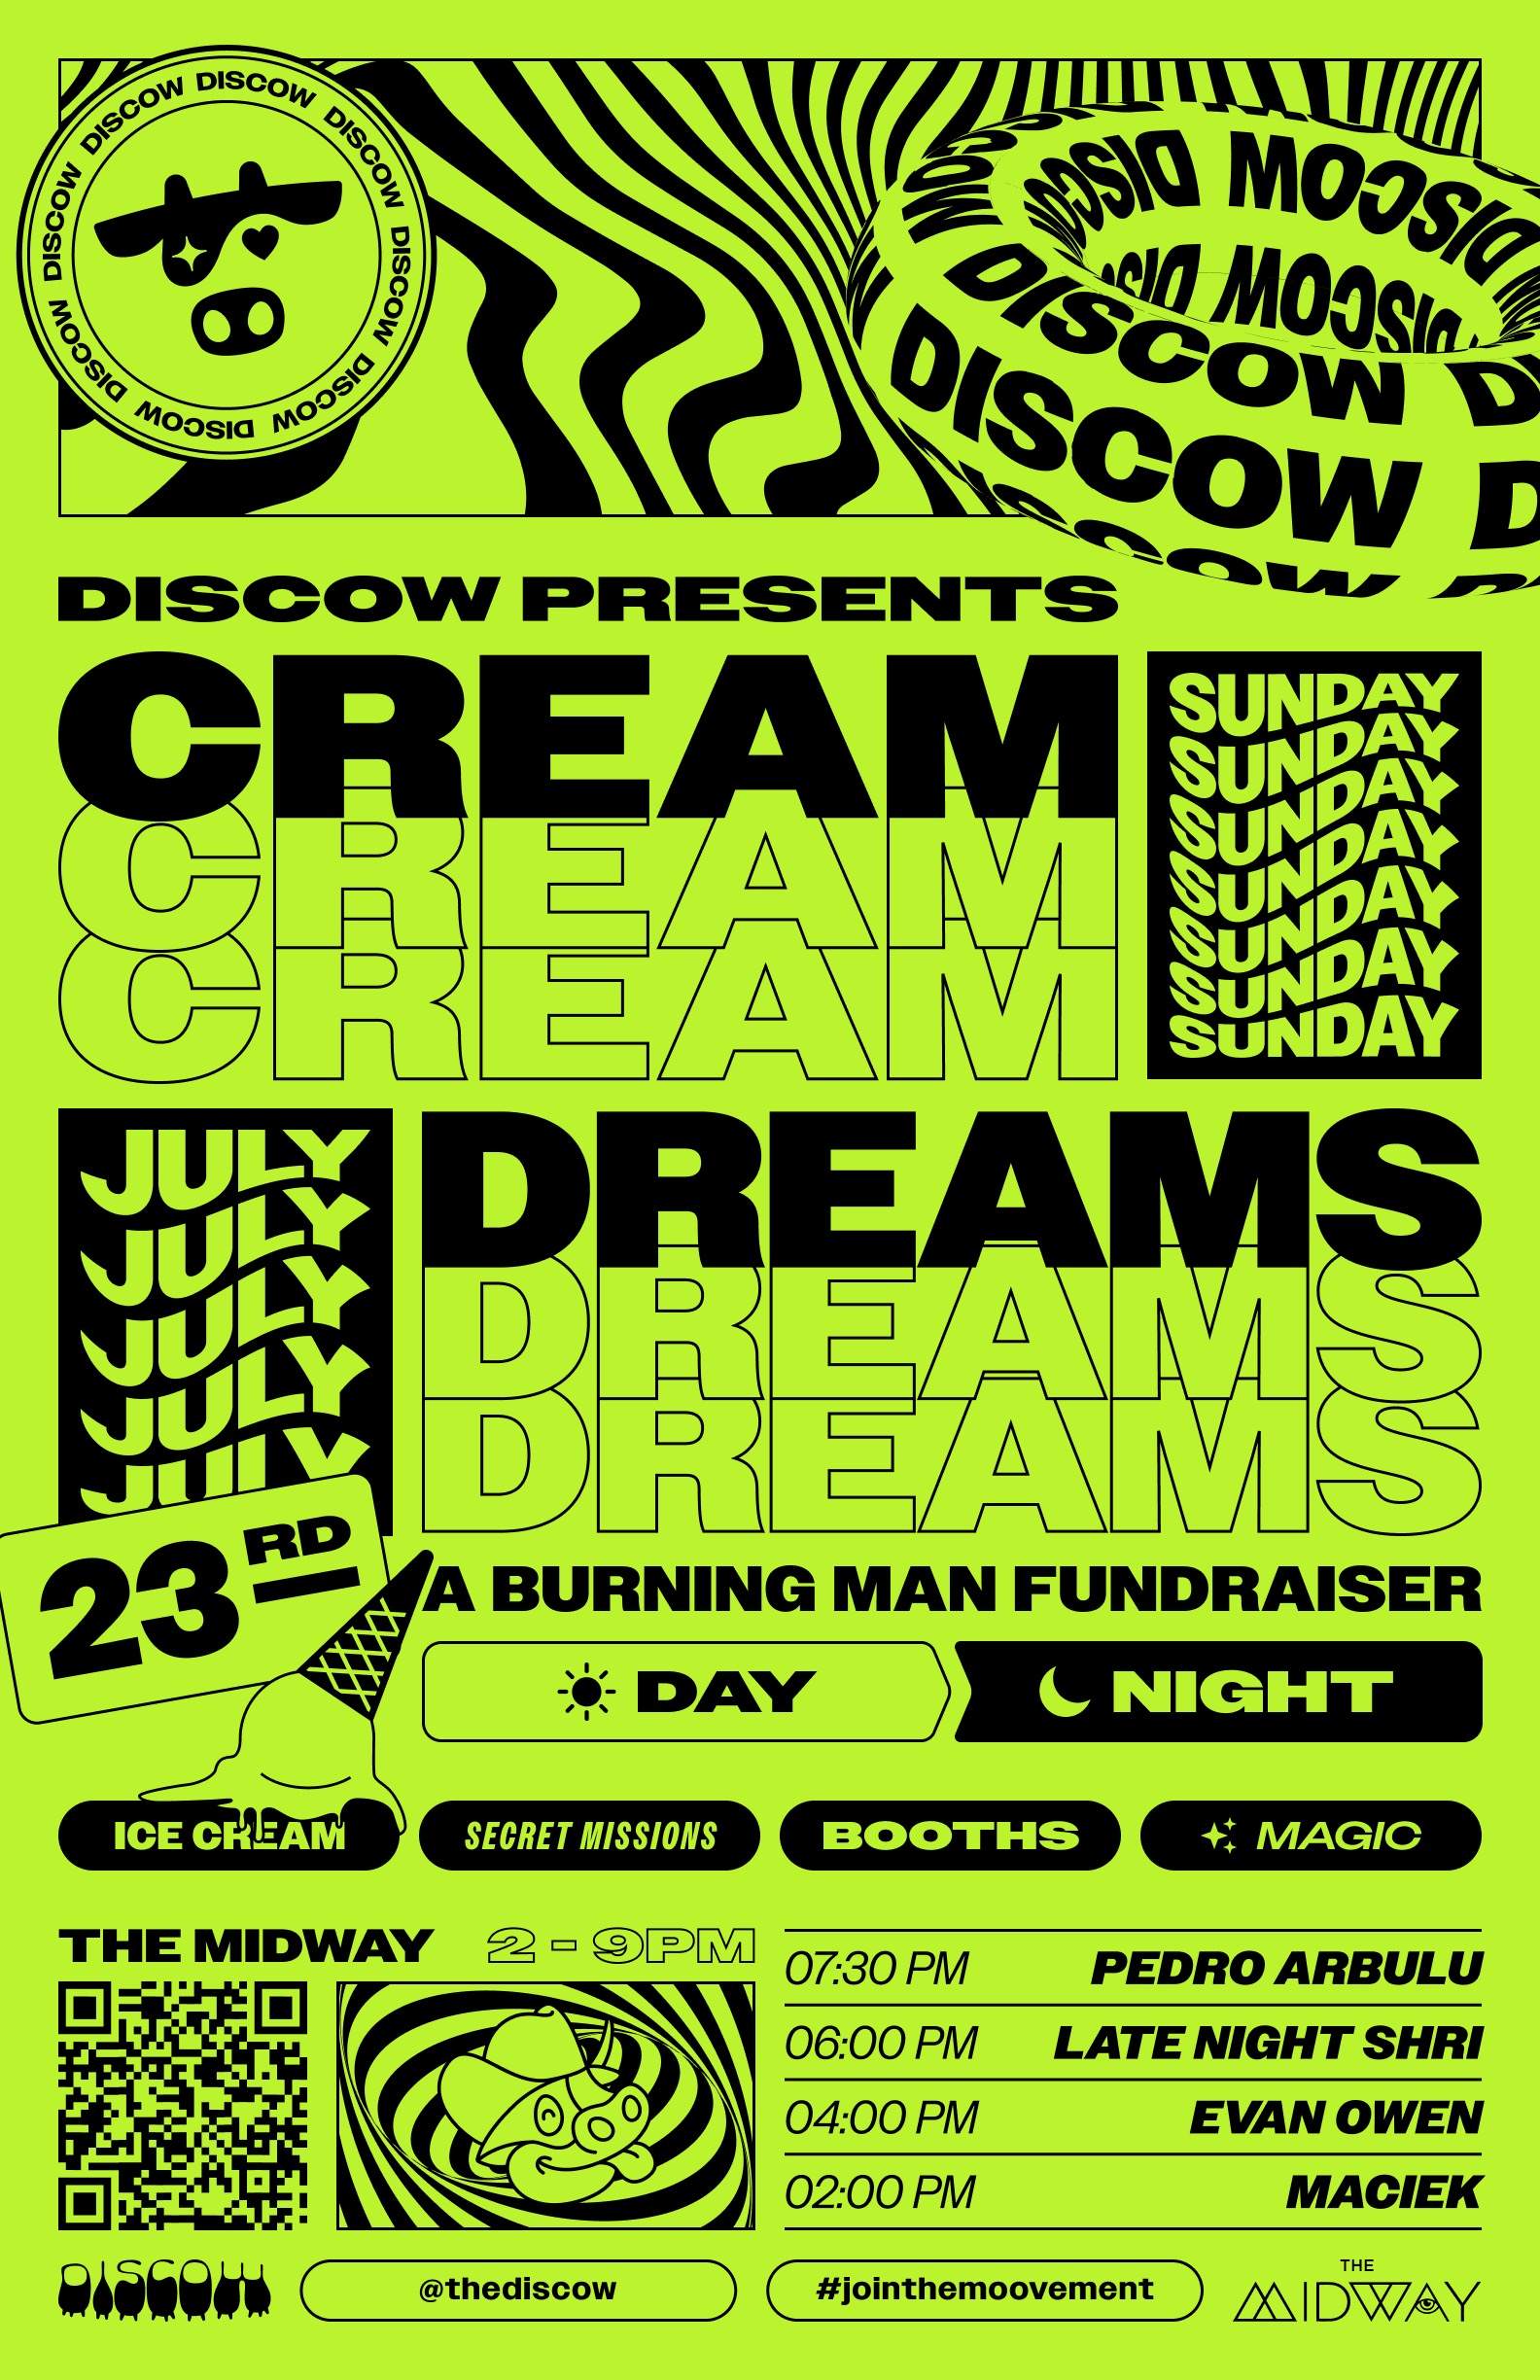 Discow presents: Cream Dreams - フライヤー表